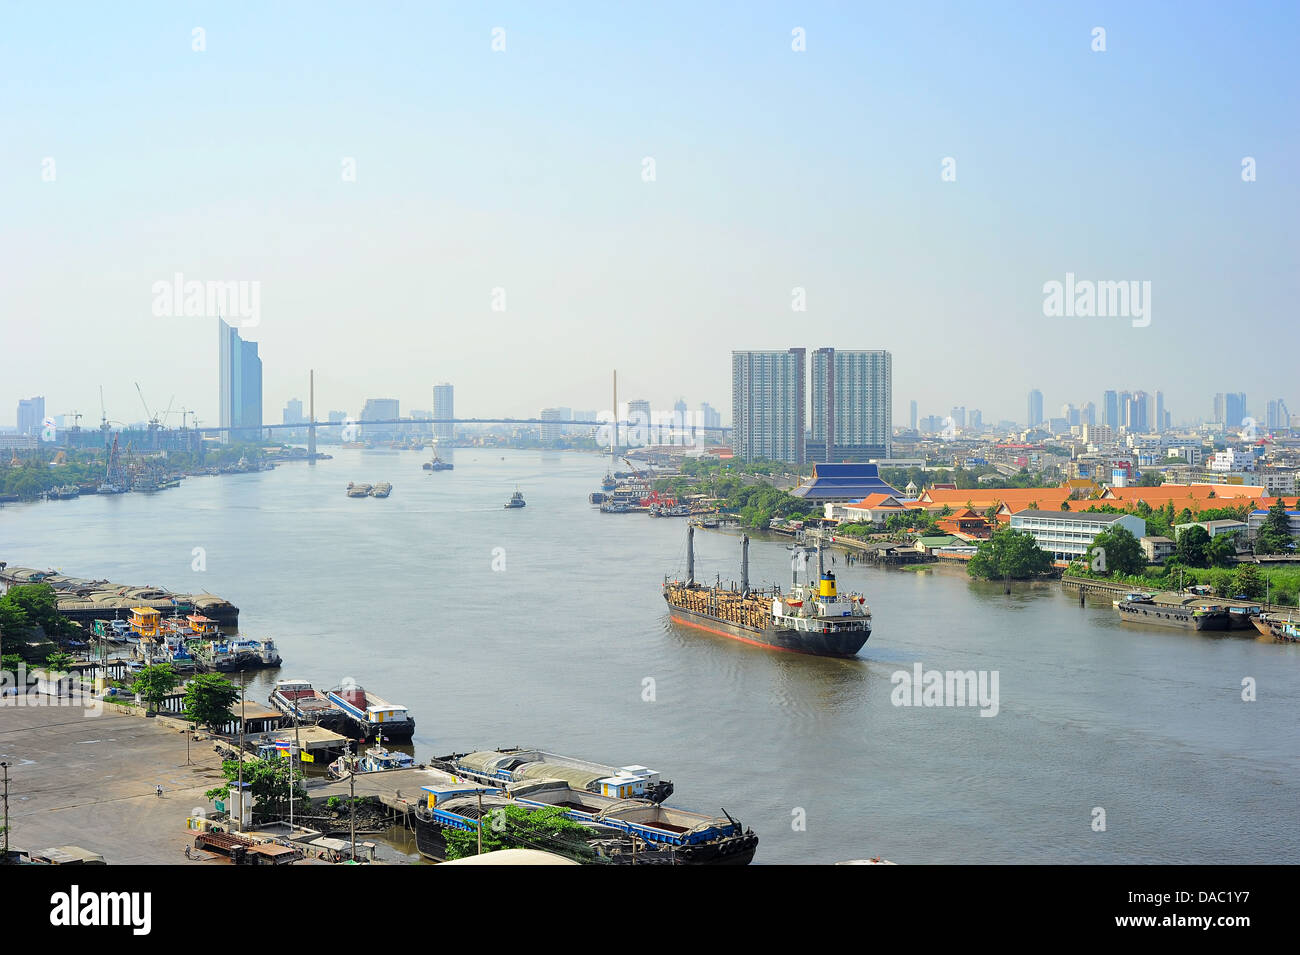 Vue aérienne de la rivière Chao Phraya à Bangkok, Thaïlande Banque D'Images